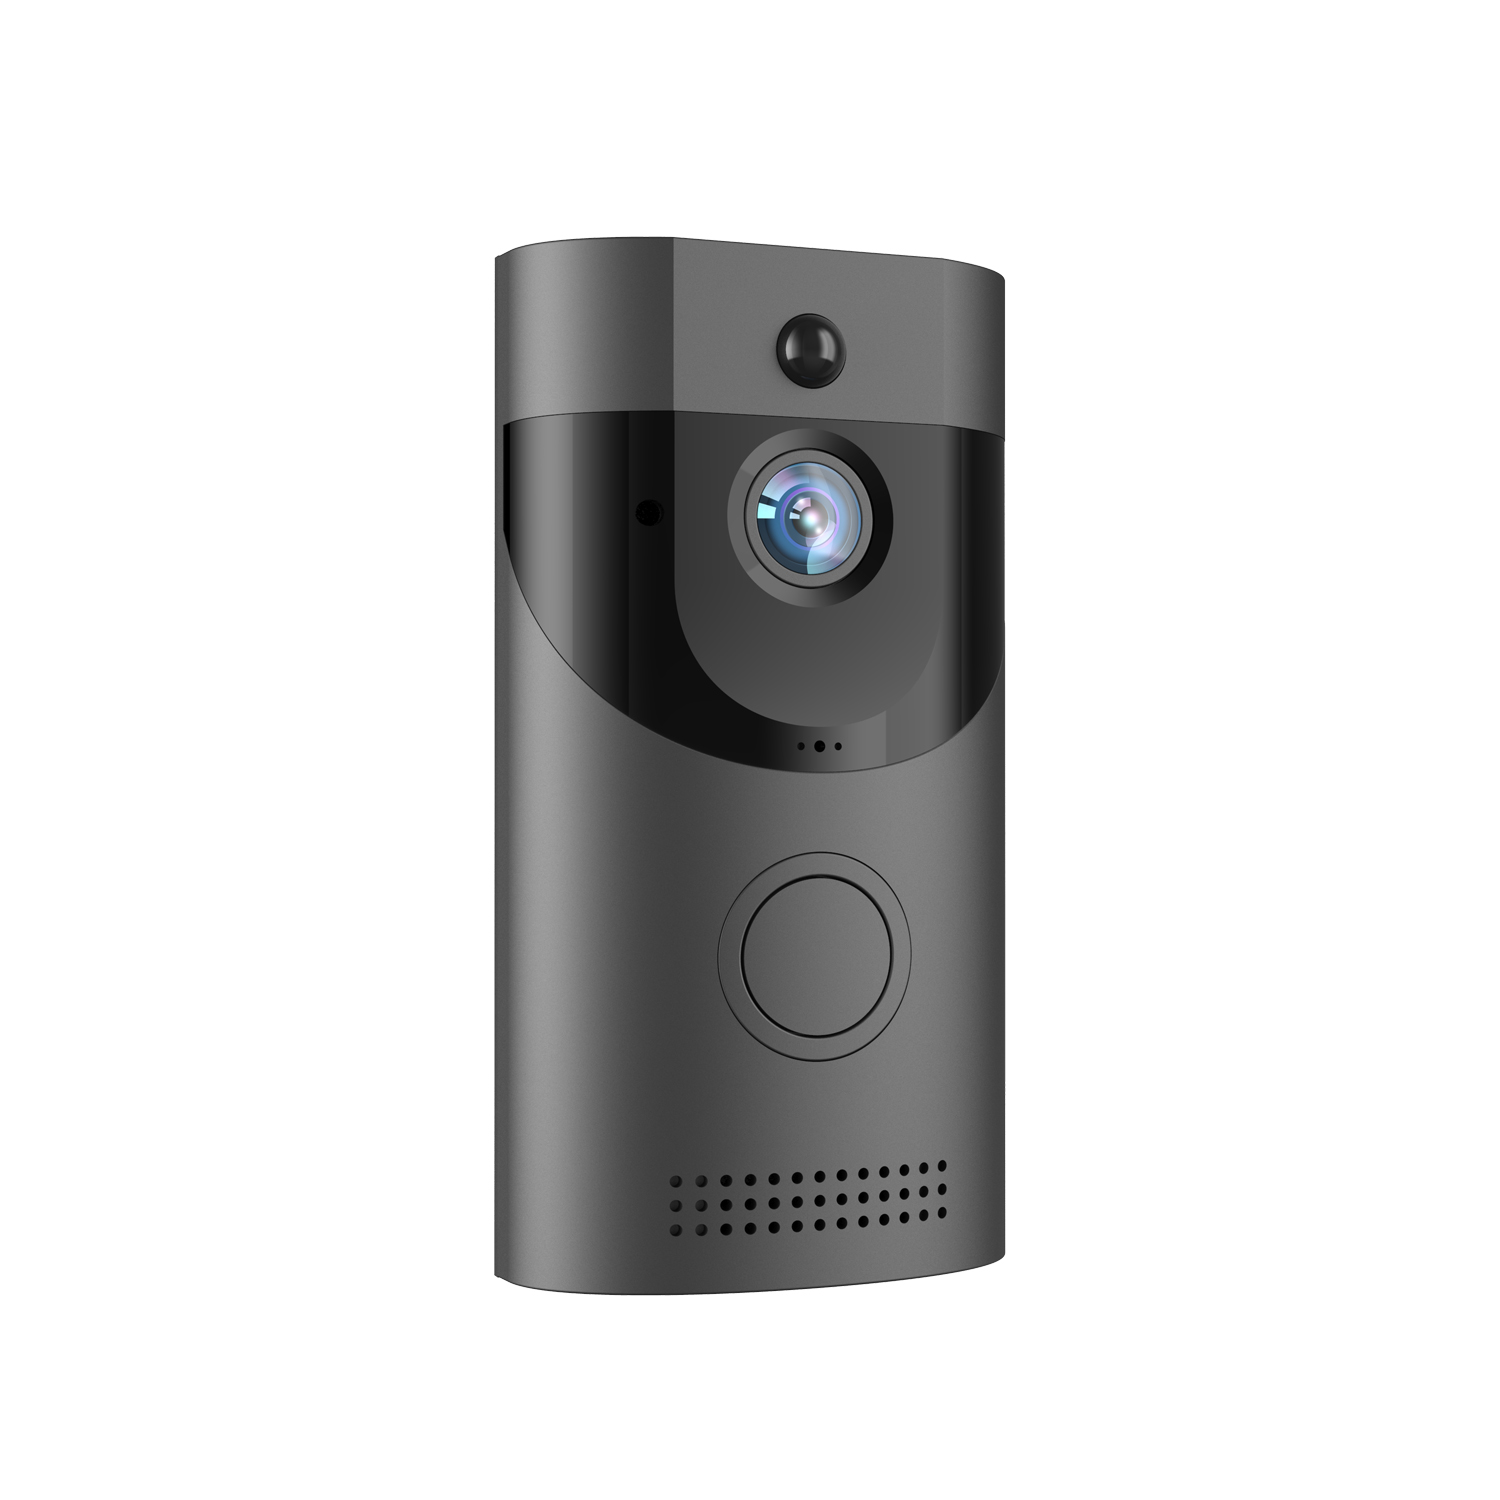 B30 WiFi Video Doorbell | Wireless Smart Video Doorbell With Remote Control